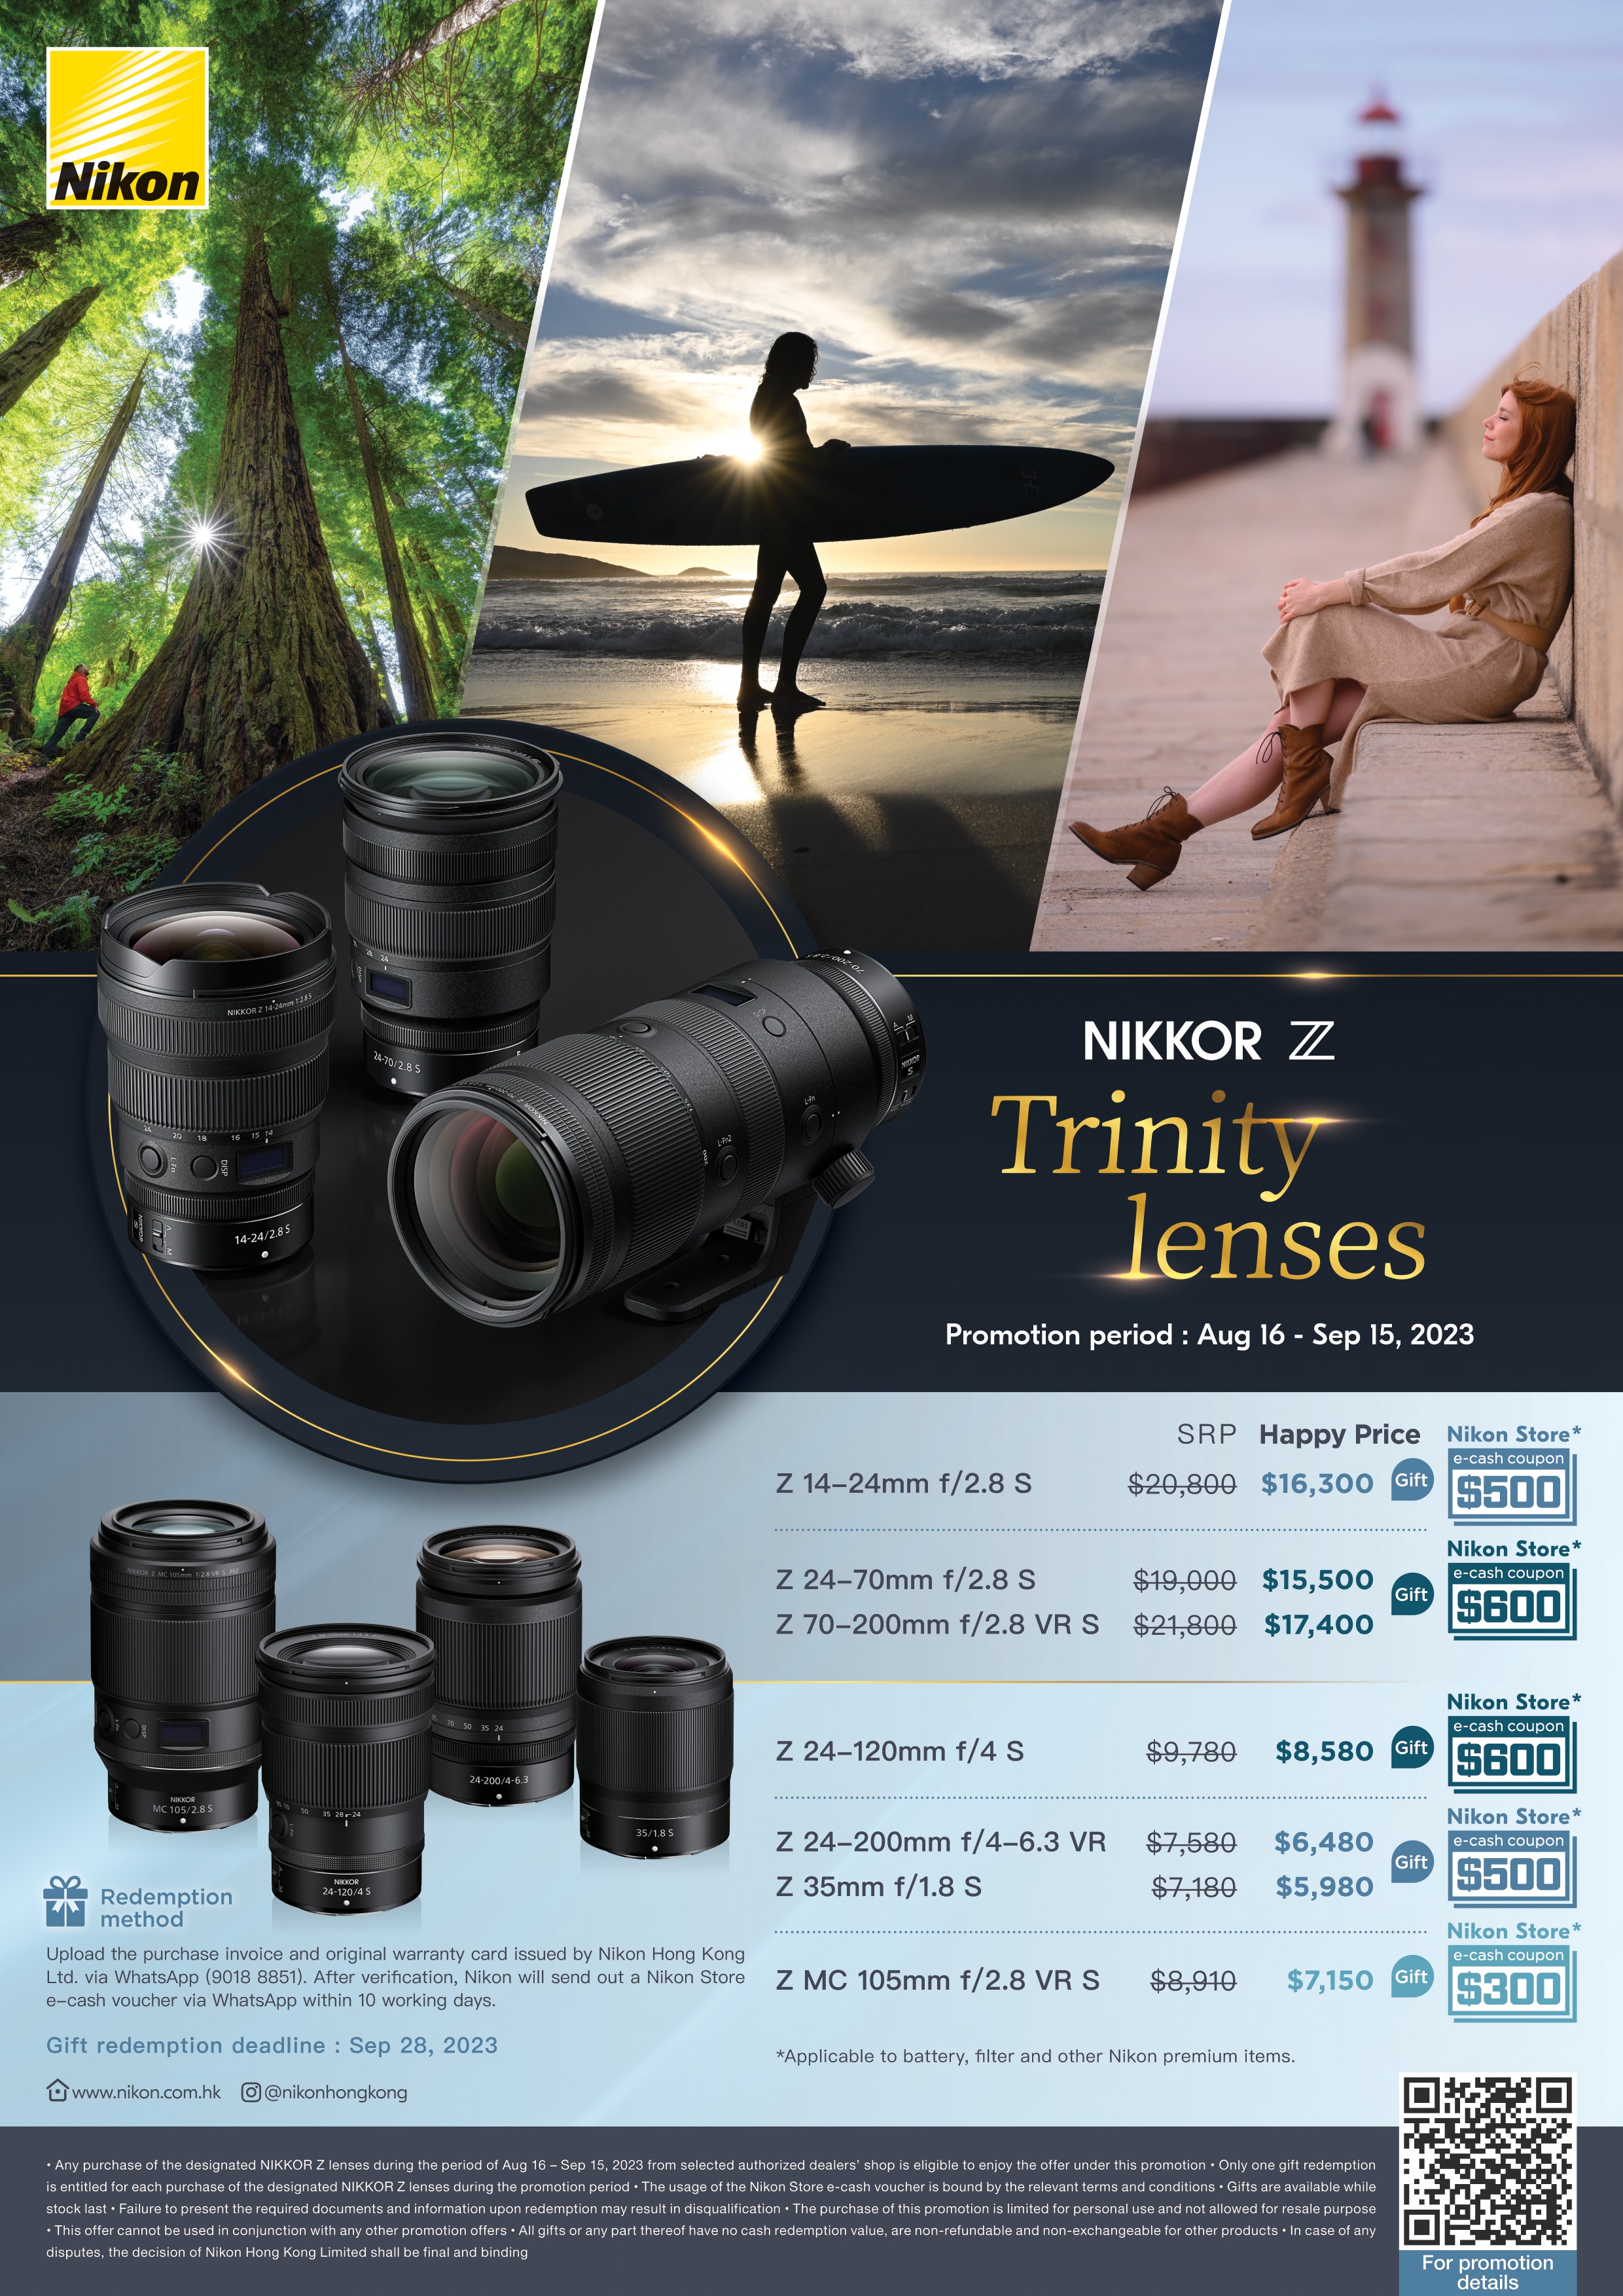 Nikon Z 50, Z 5 & NIKKOR Z Promotion, February 2023 | Nikon Cameras, Lenses & Accessories